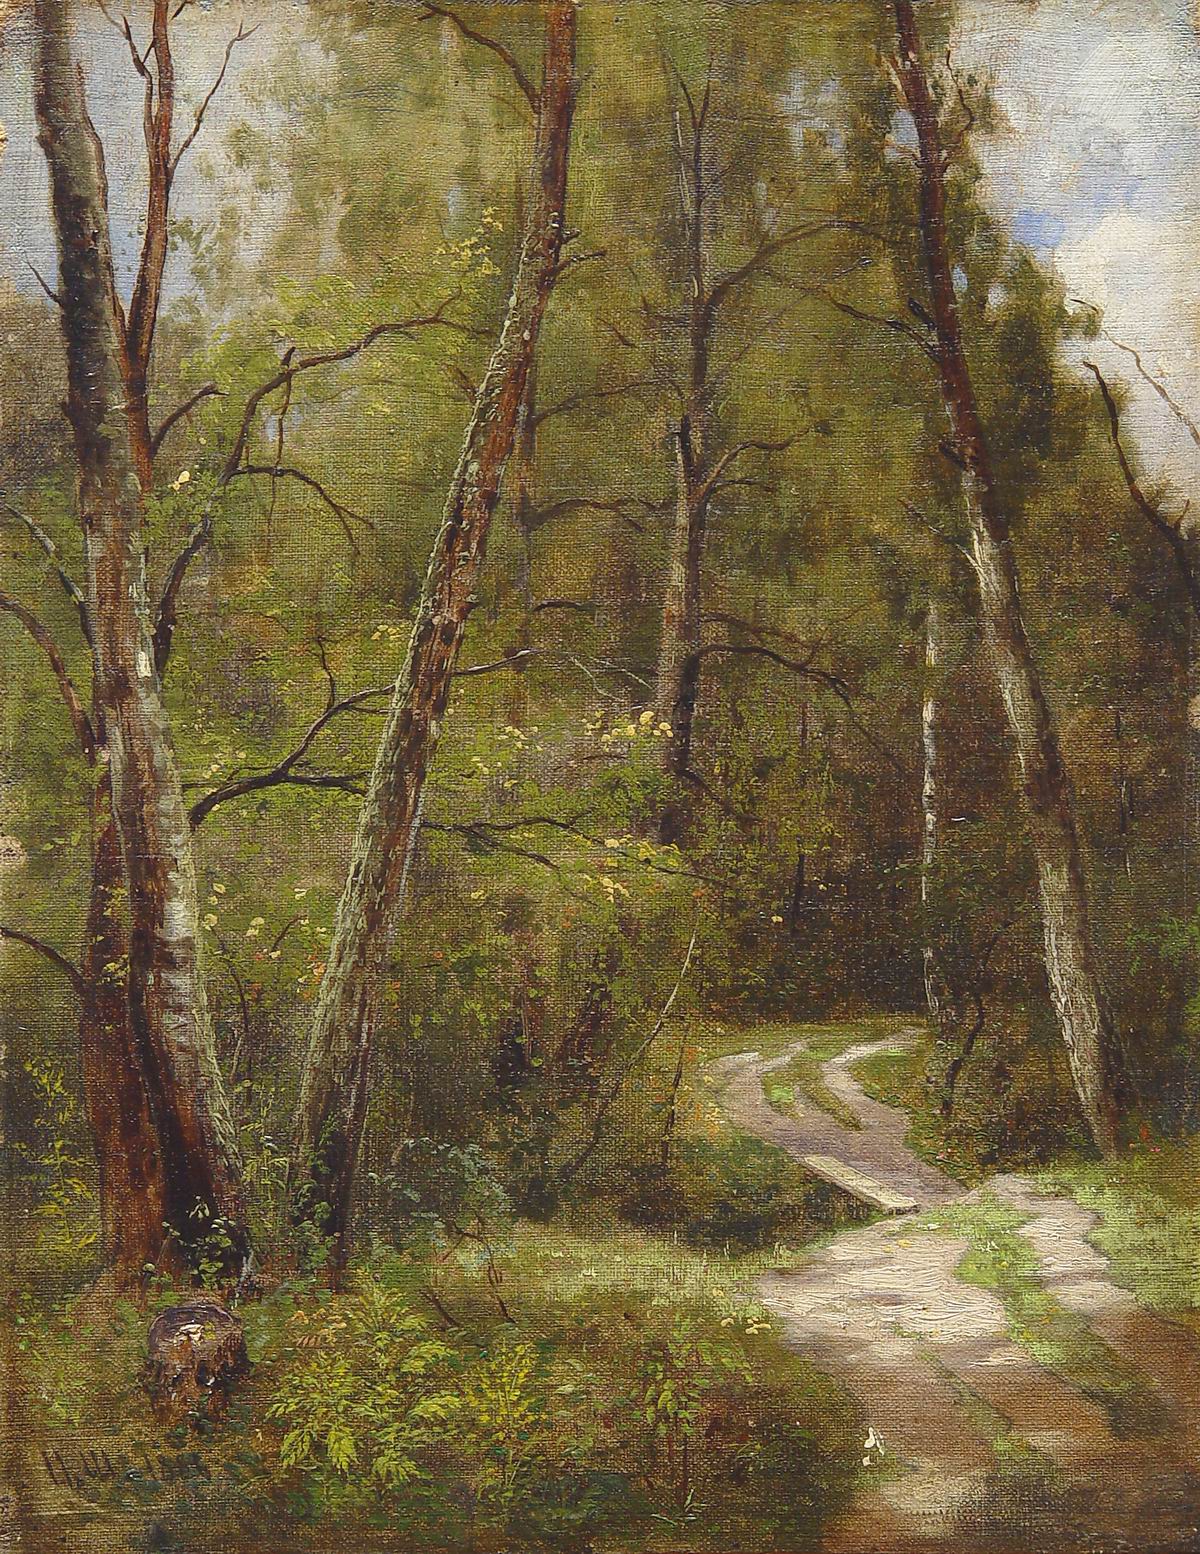 Шишкин. Тропинка в лесу. 1886